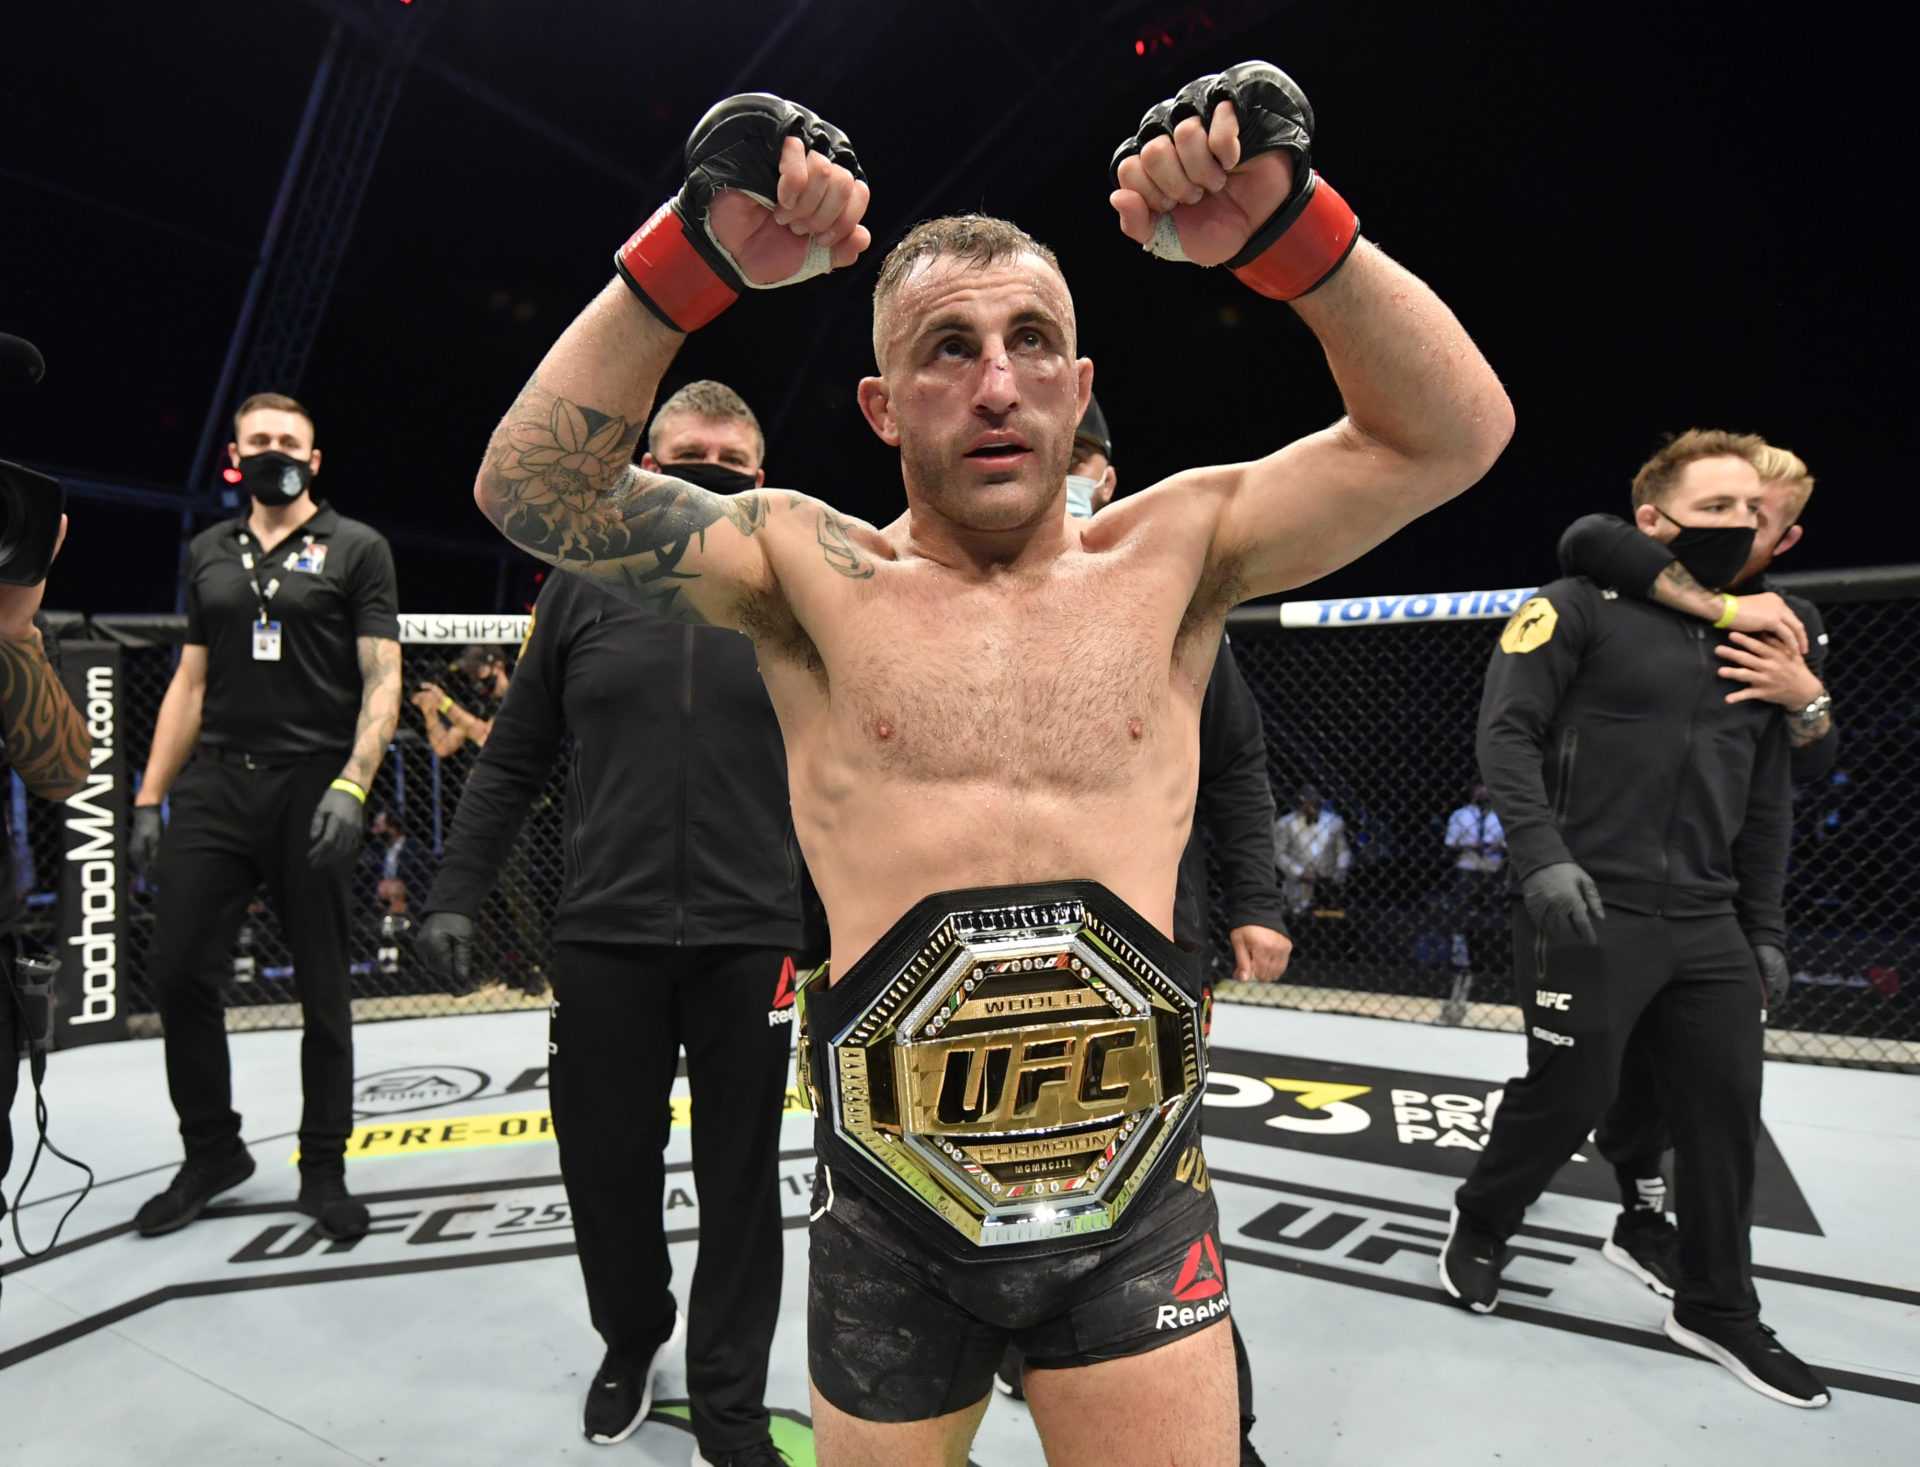 `` J'ai combattu dans les poids moyens de nombreuses fois '' - Alexander Volkanovski met la division des poids légers de l'UFC en garde